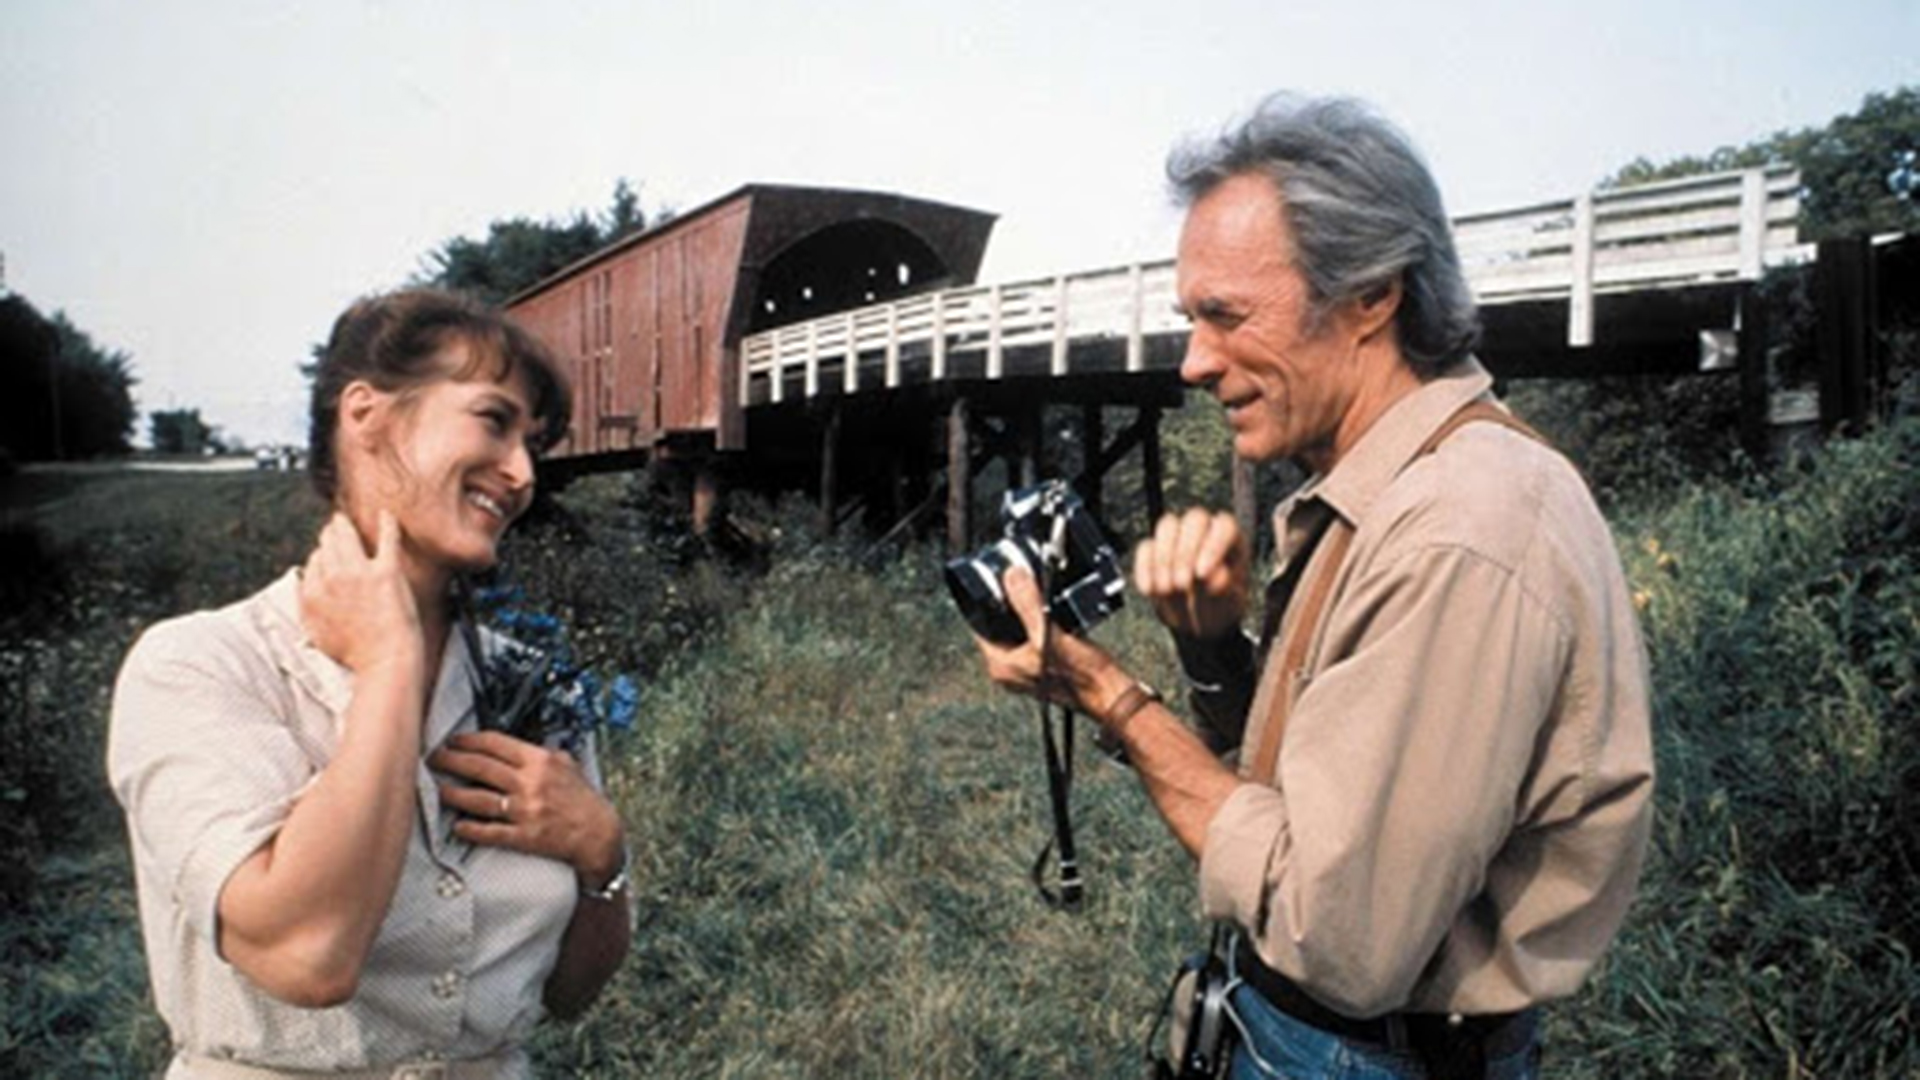 Los puentes de Madison: la película que revirtió la imagen de duro de Eastwood y que casi no protagoniza Meryl Streep por su edad